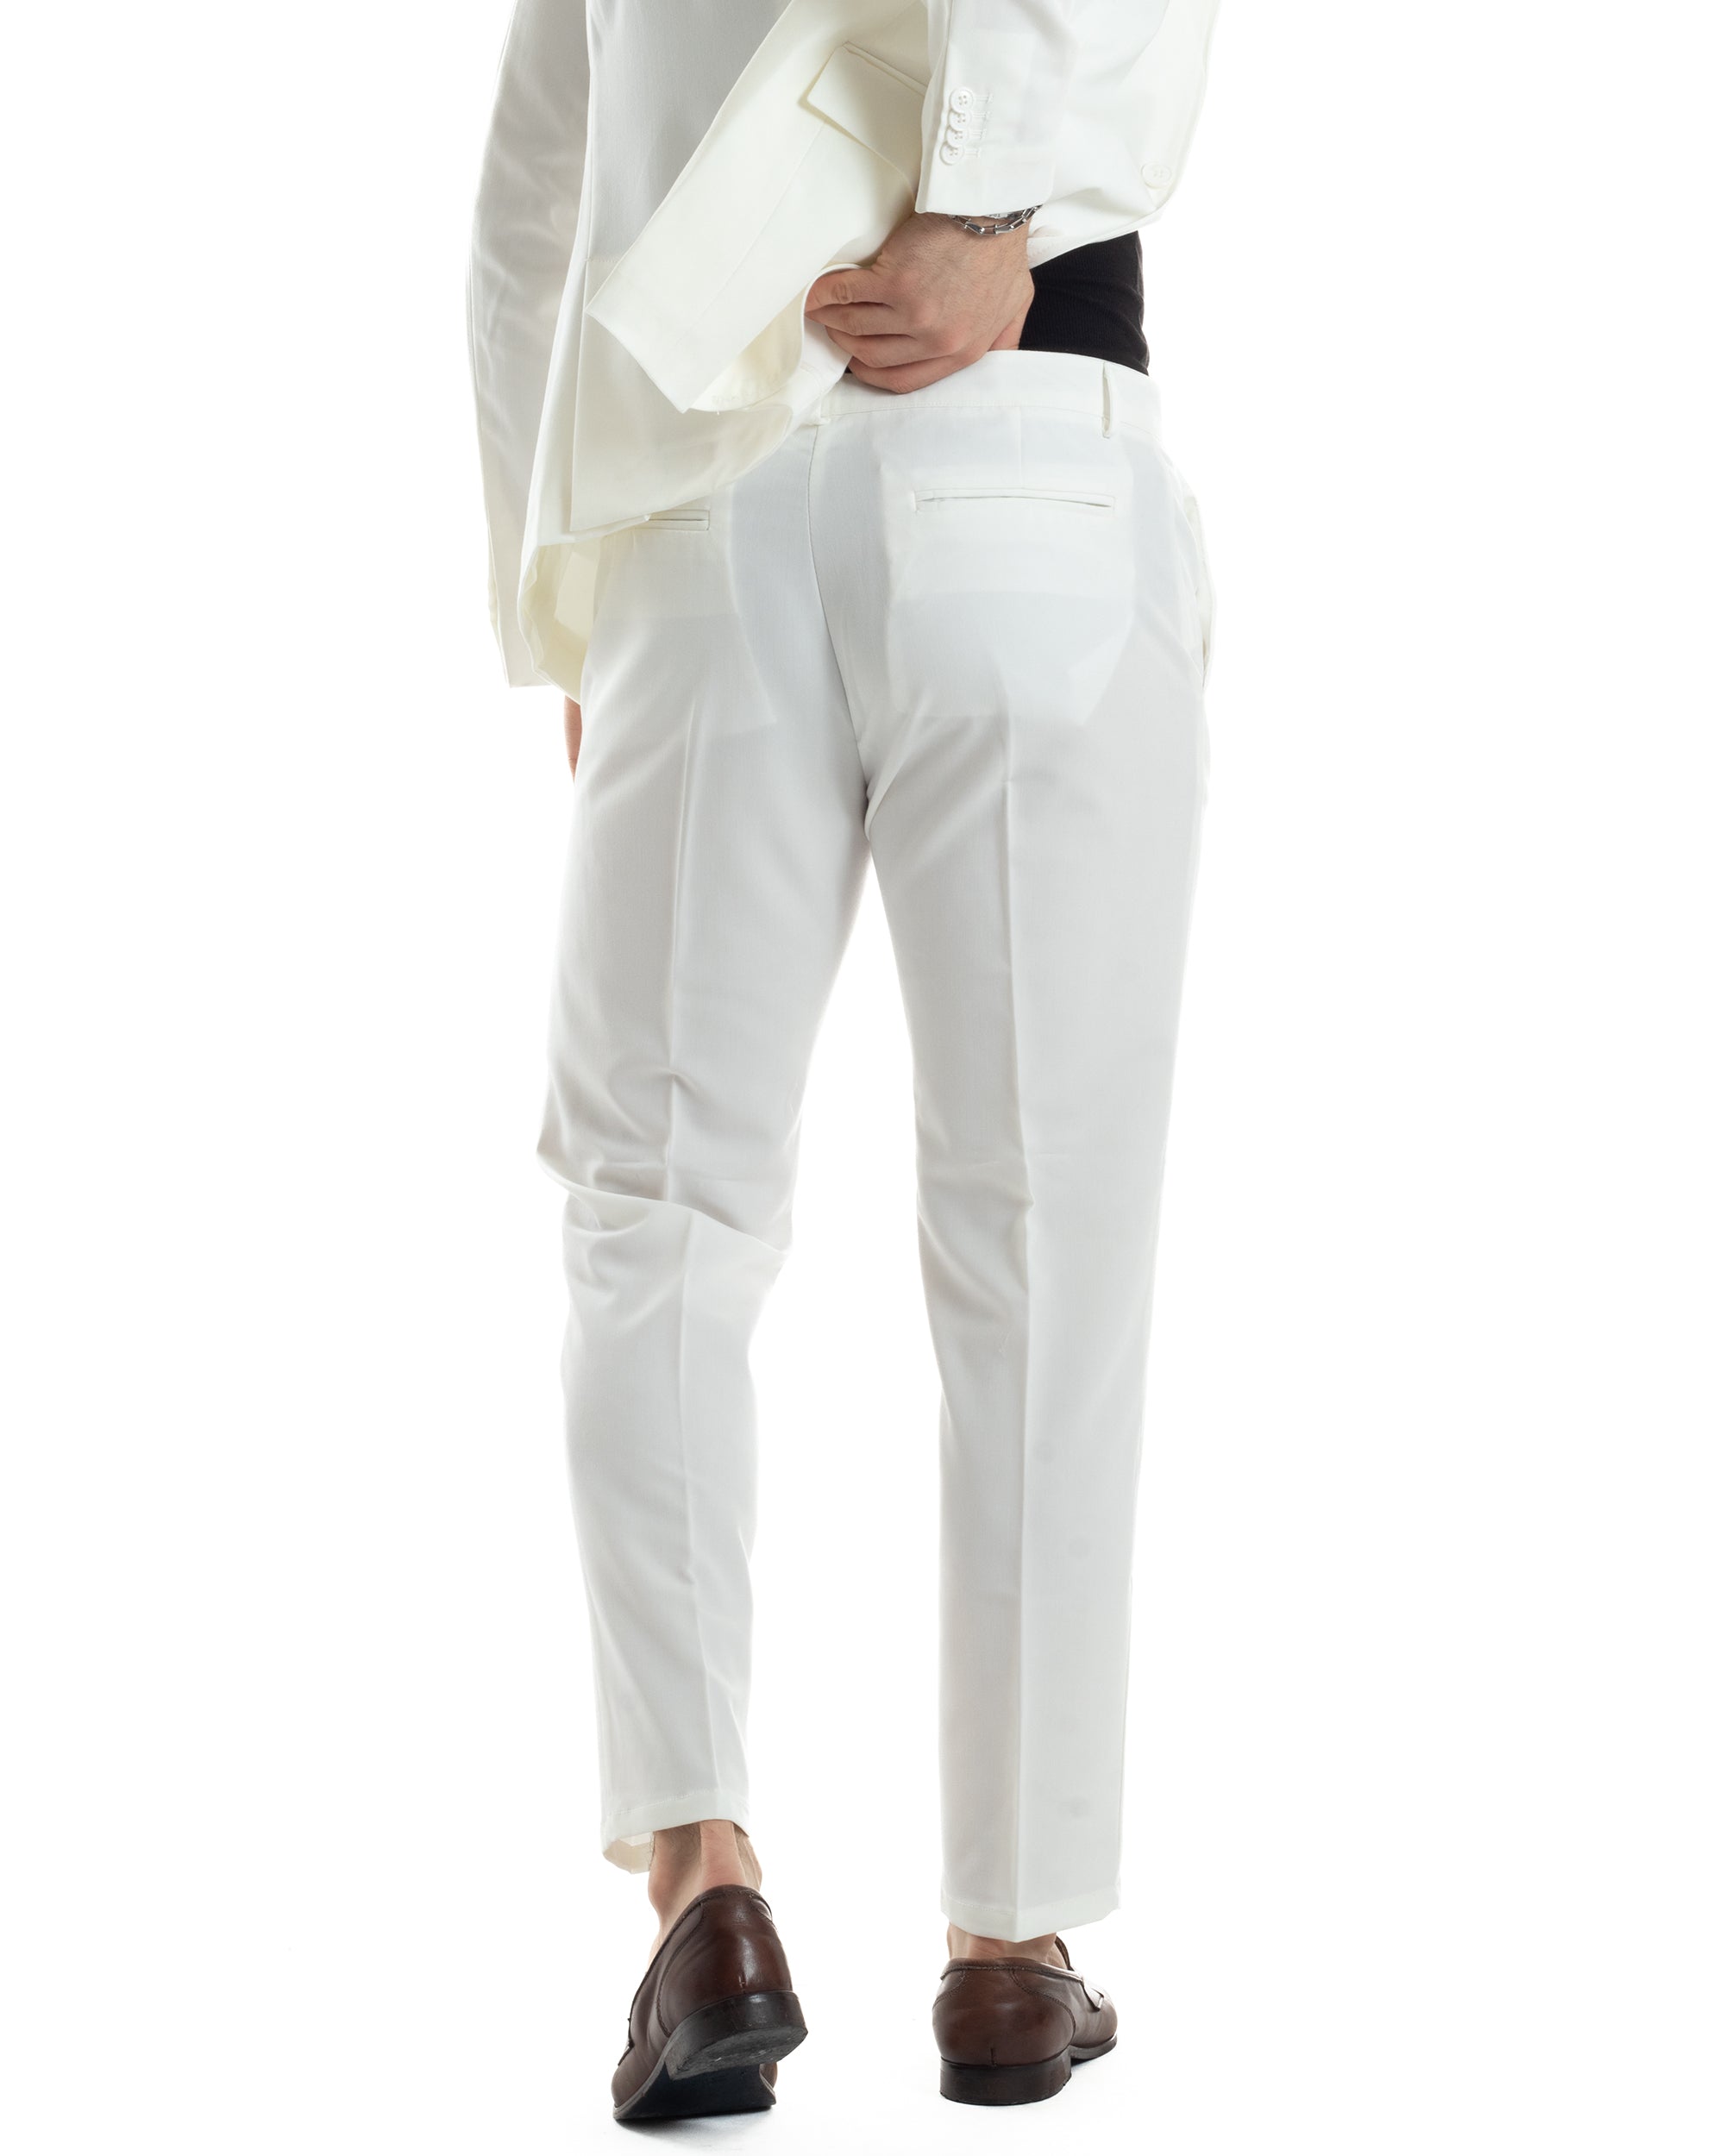 Abito Uomo Doppiopetto Vestito Completo Giacca Pantaloni Bianco Tinta Unita Elegante Casual GIOSAL-AE1041A